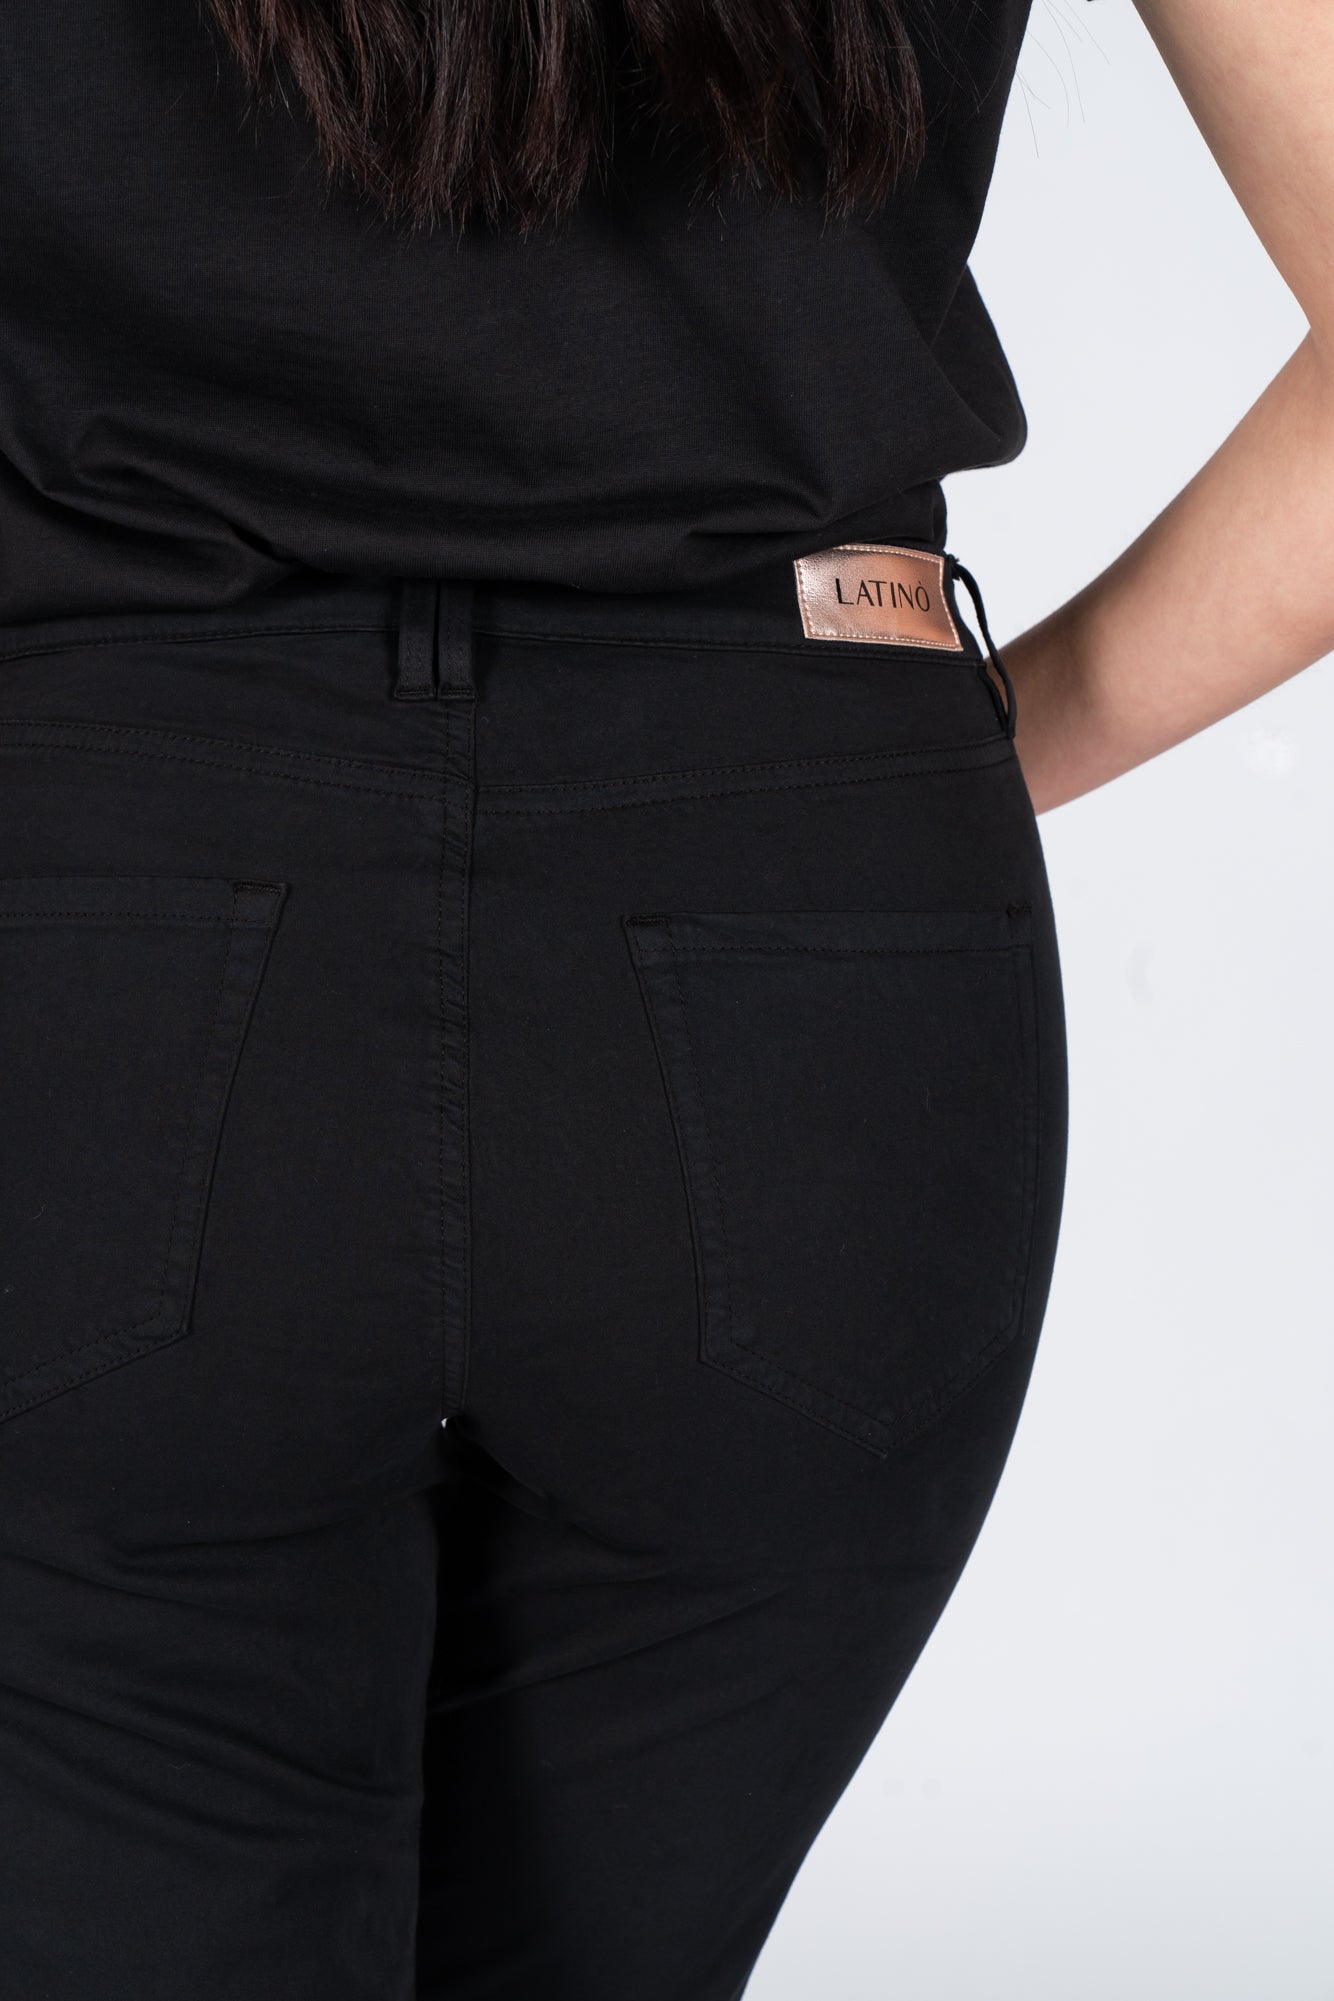 Latino' Jeans Pants Black Woman-3